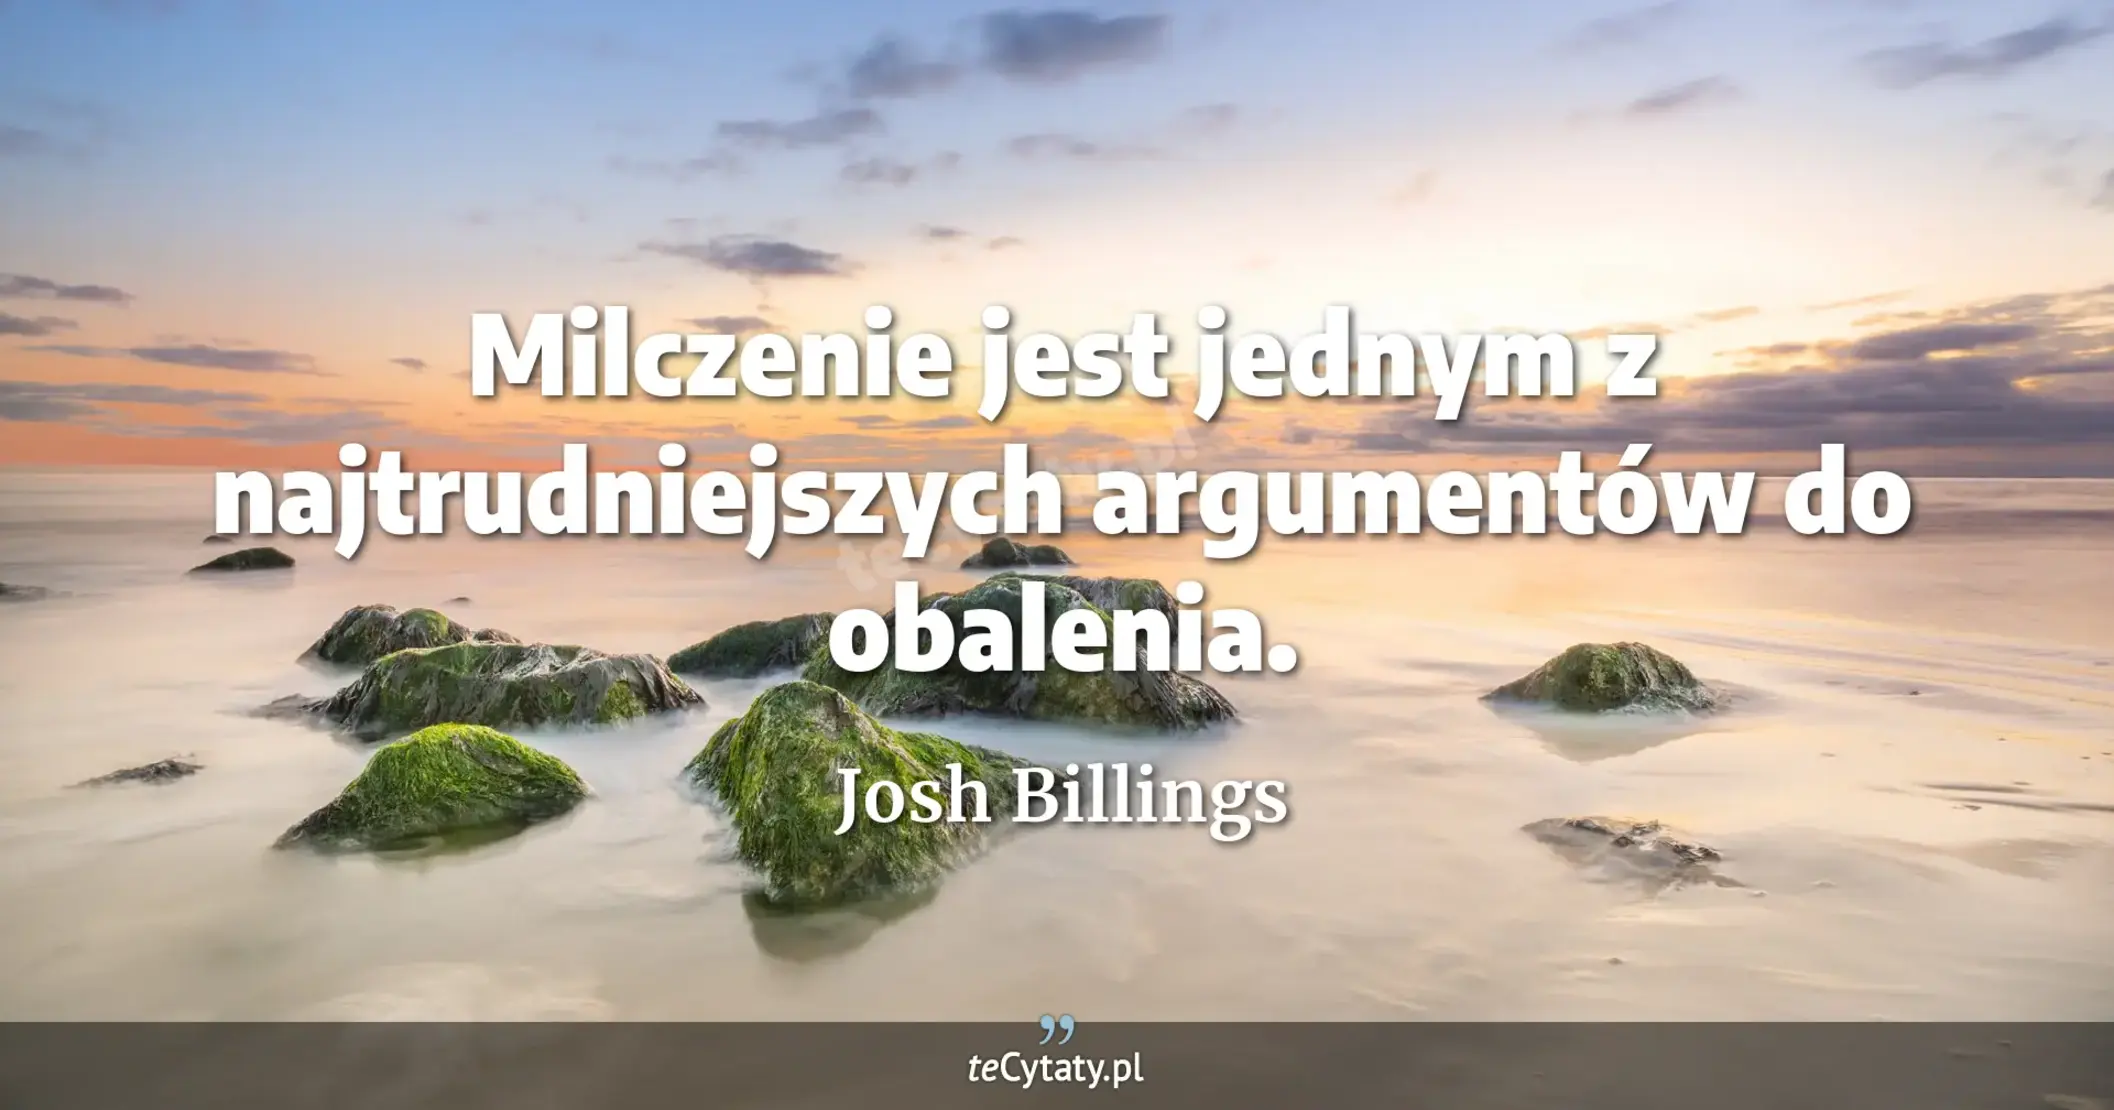 Milczenie jest jednym z najtrudniejszych argumentów do obalenia. - Josh Billings